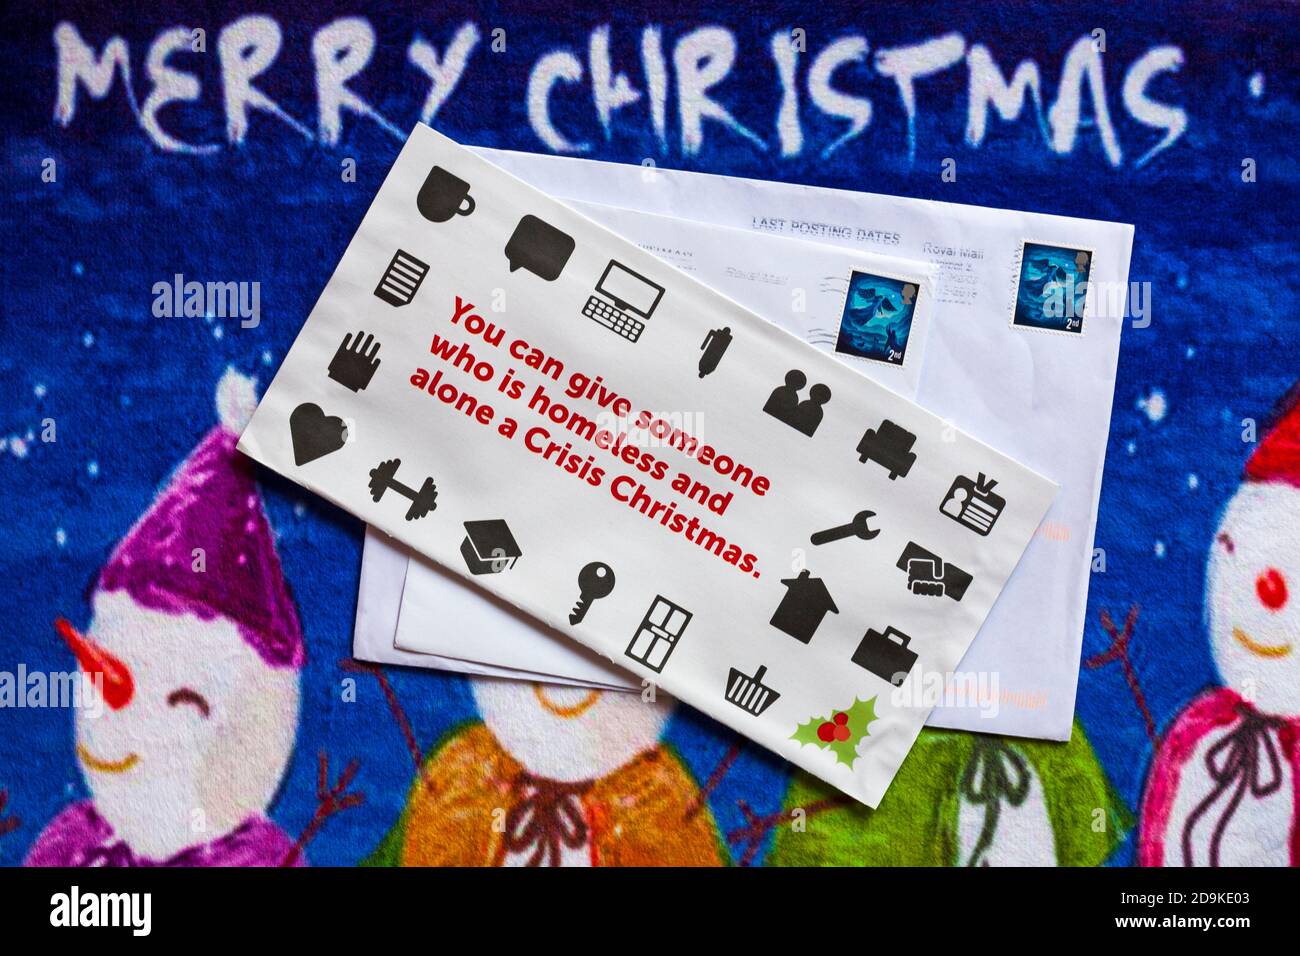 Post on Christmas mat - Charity-Appell, Krise Sie können jemandem, der obdachlos ist und allein eine Krise Weihnachten - Frohe Weihnachten Stockfoto